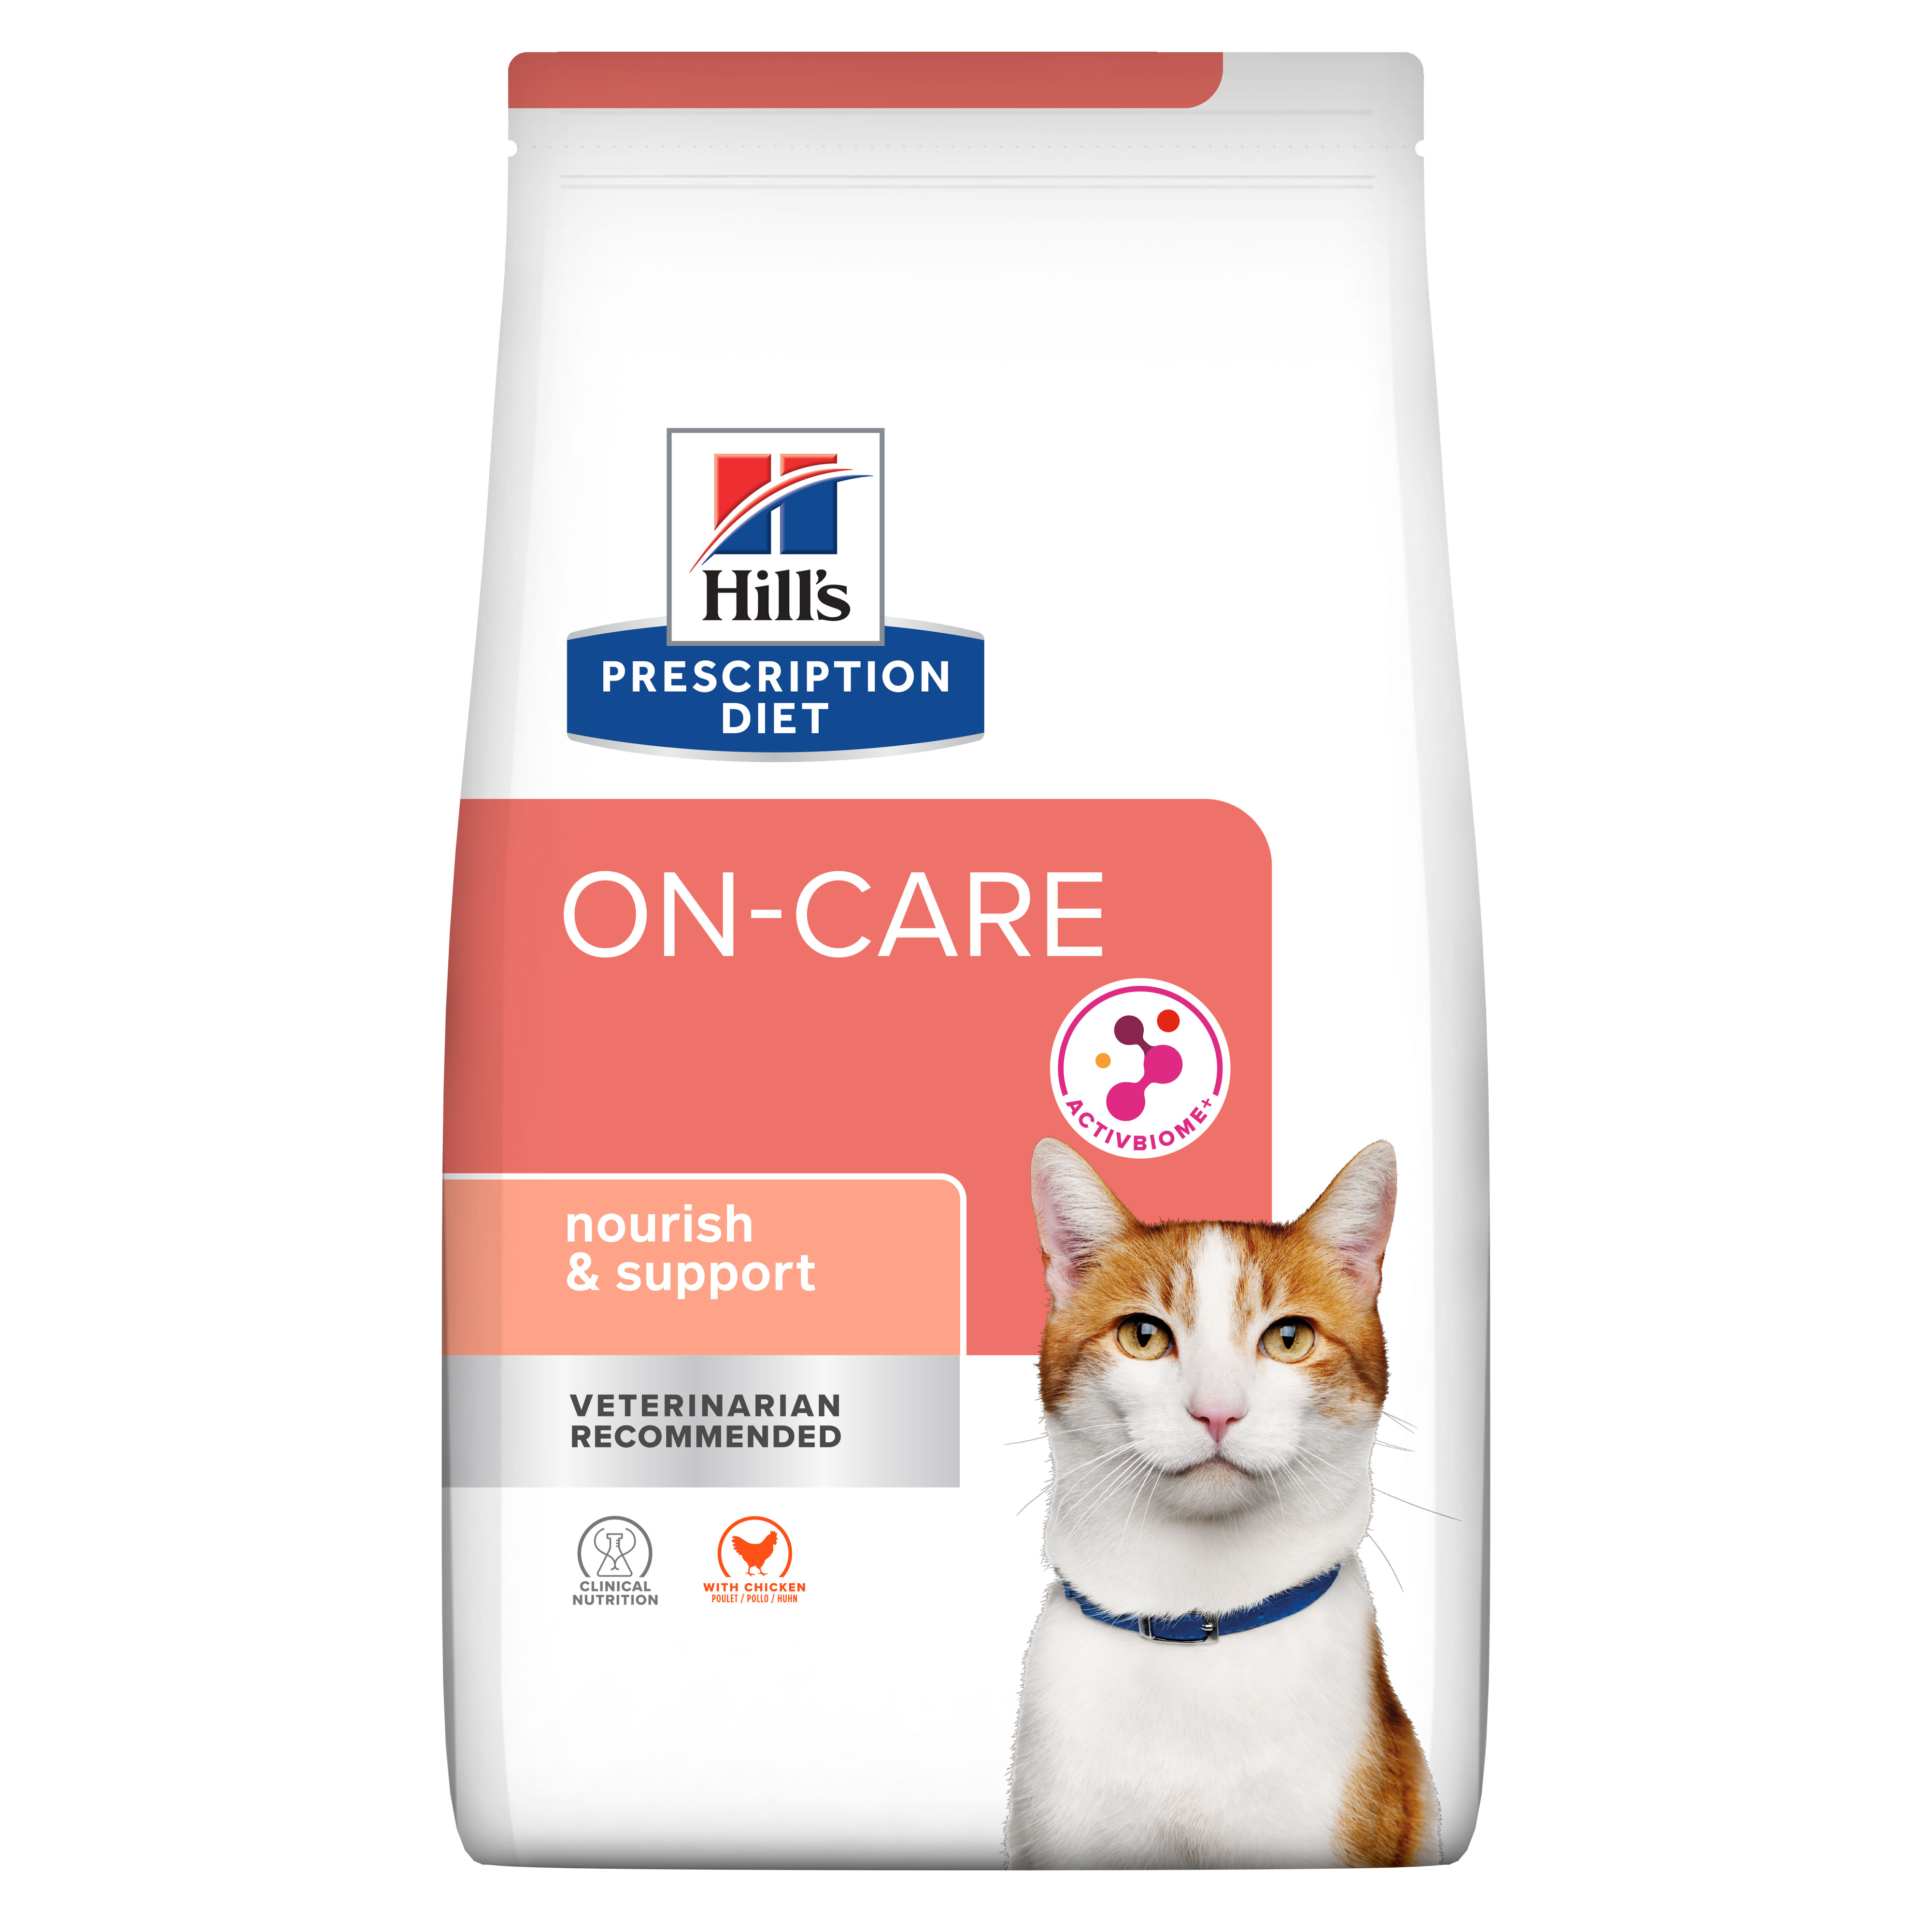 On-Care | Hill's Prescription Diet תמיכה בסרטן לחתול, 1.5 ק"ג